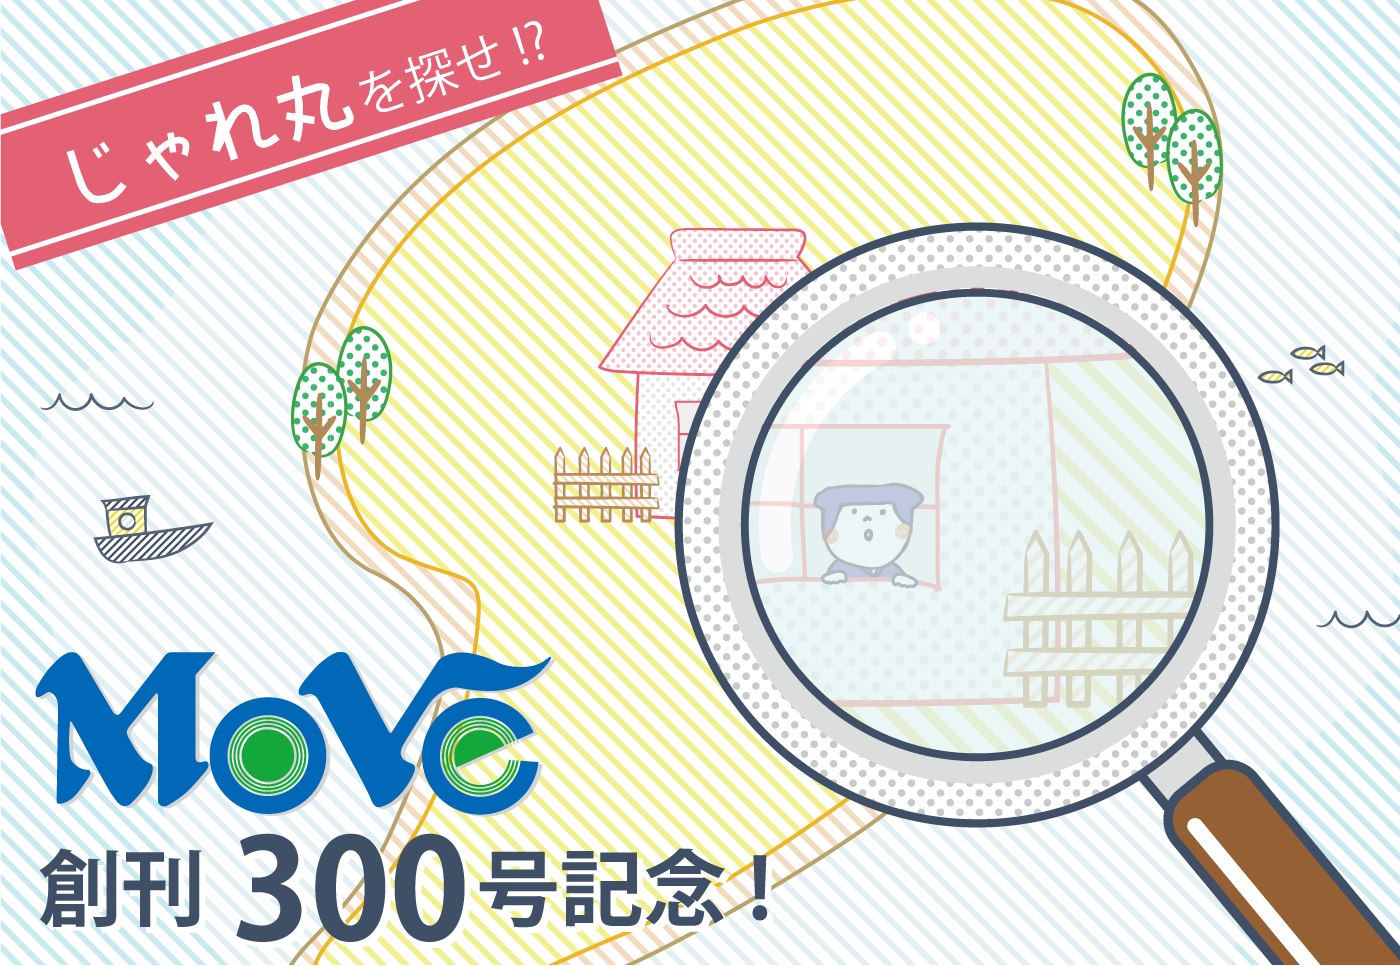 【情報紙Move創刊300号記念】じゃれ丸を探せ!?